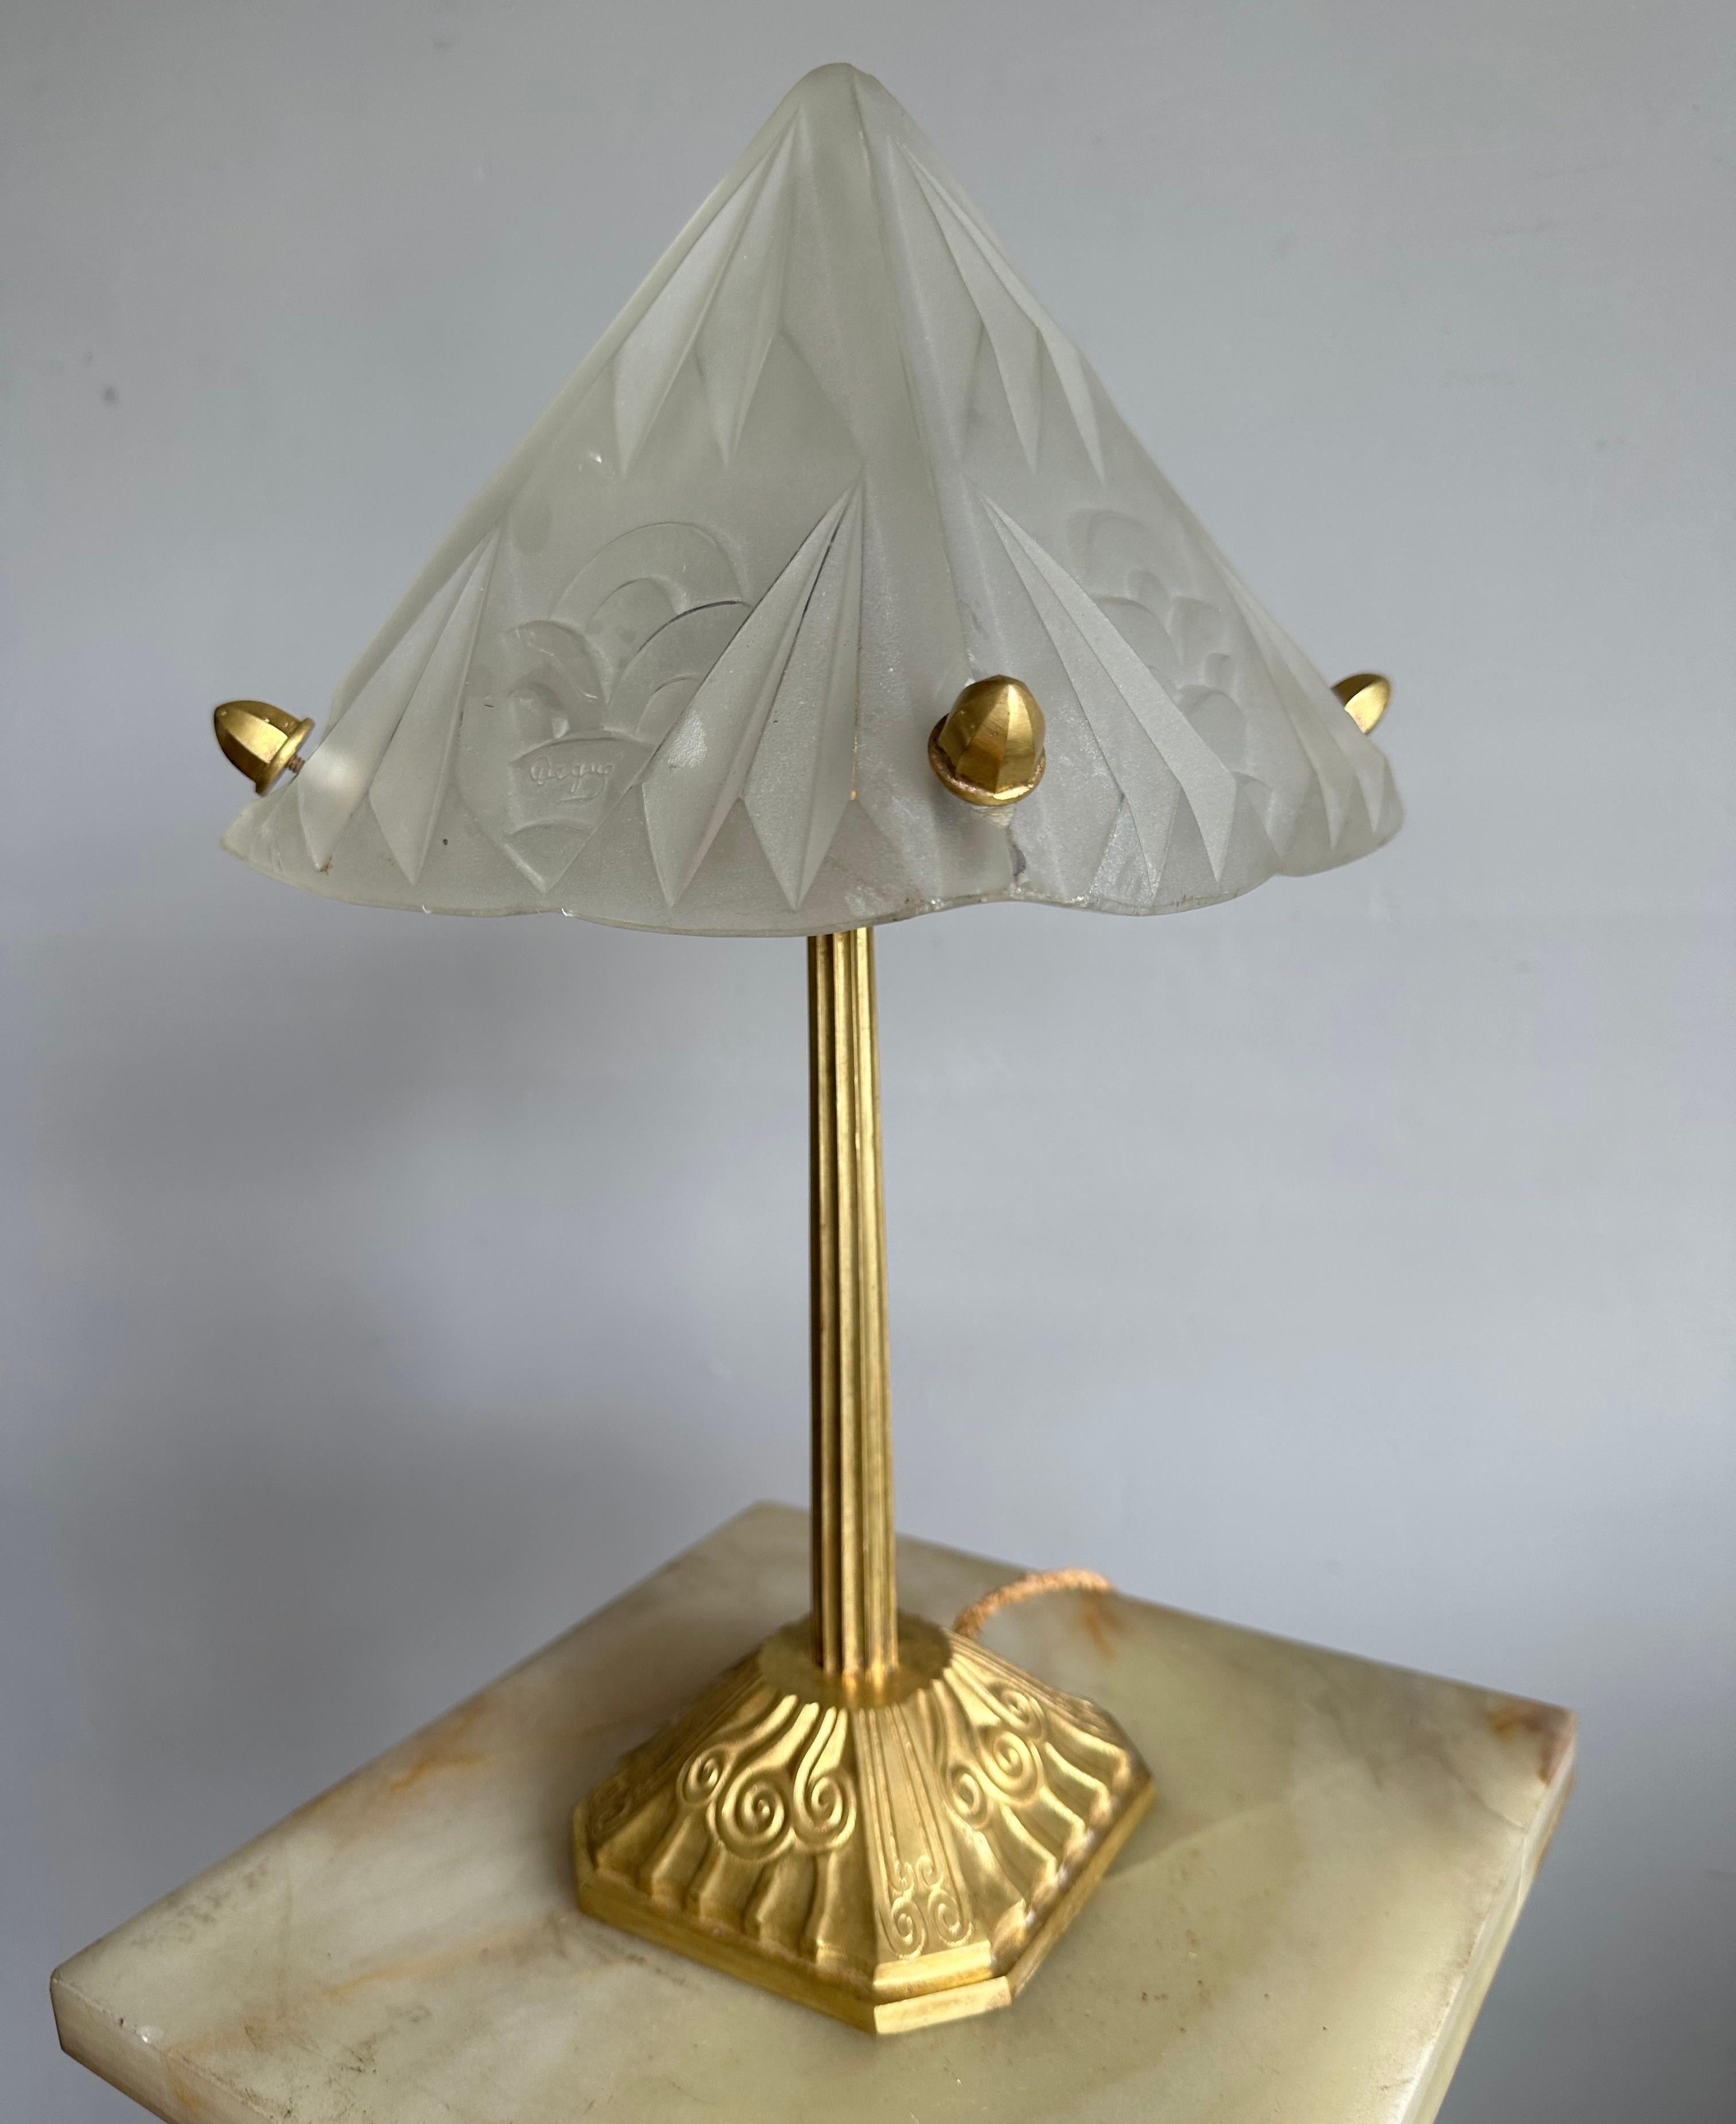 Lampe de table ou de bureau 1920/1930 merveilleusement fabriquée à la main pour une ambiance parfaite.

Cette lampe de table Art déco rare et de qualité supérieure a été réalisée par le célèbre studio de verrerie Degue en France, vers 1920/1930. Il